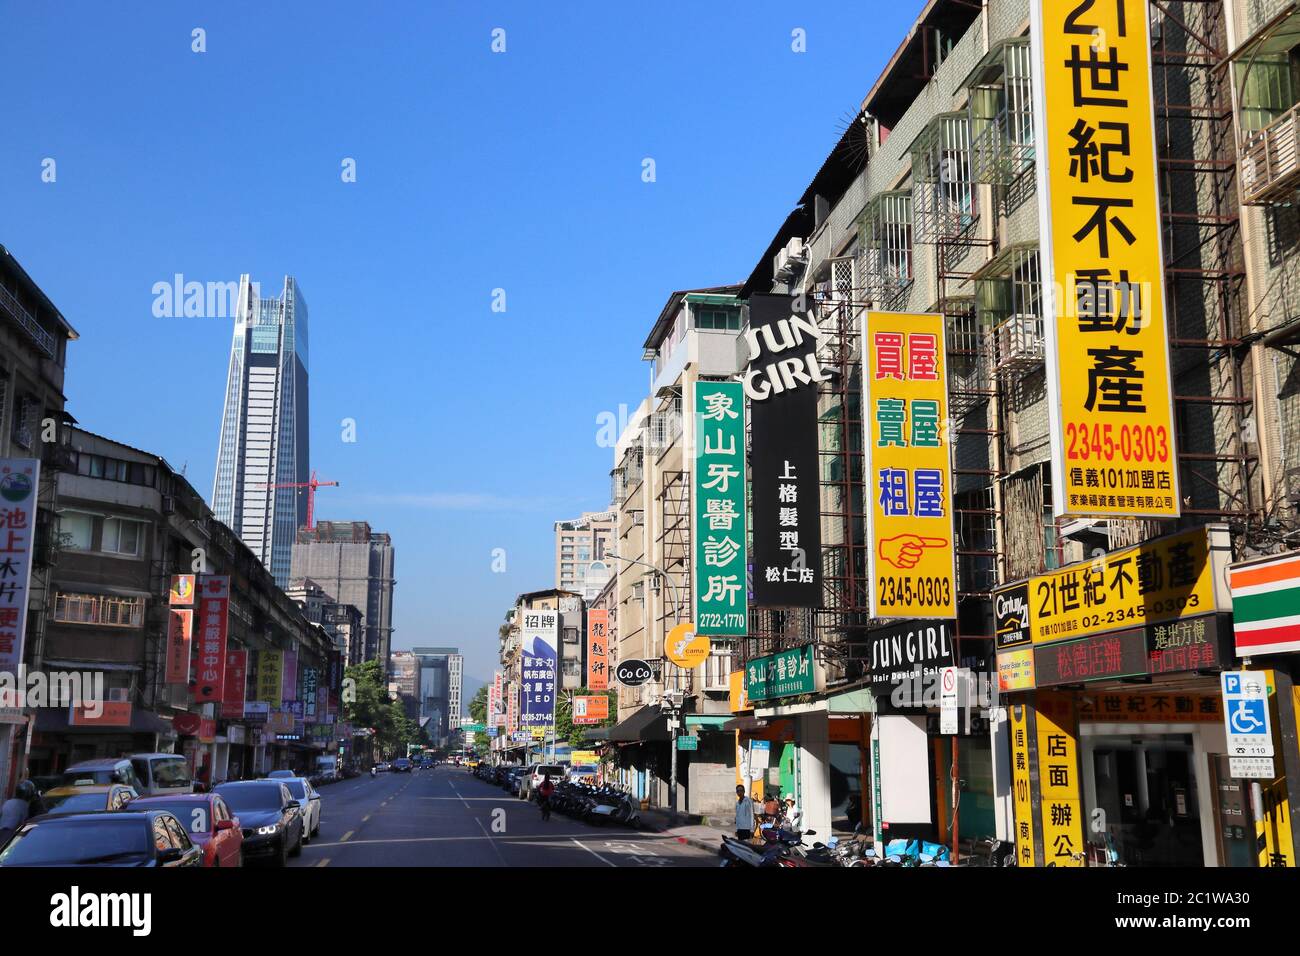 TAIPEI, Taiwan - Dezember 5, 2018: Street View in Xinyi Bezirk von Taipeh, Taiwan. Taipei ist die Hauptstadt von Taiwan mit einer Bevölkerung von 8,5 Millio Stockfoto